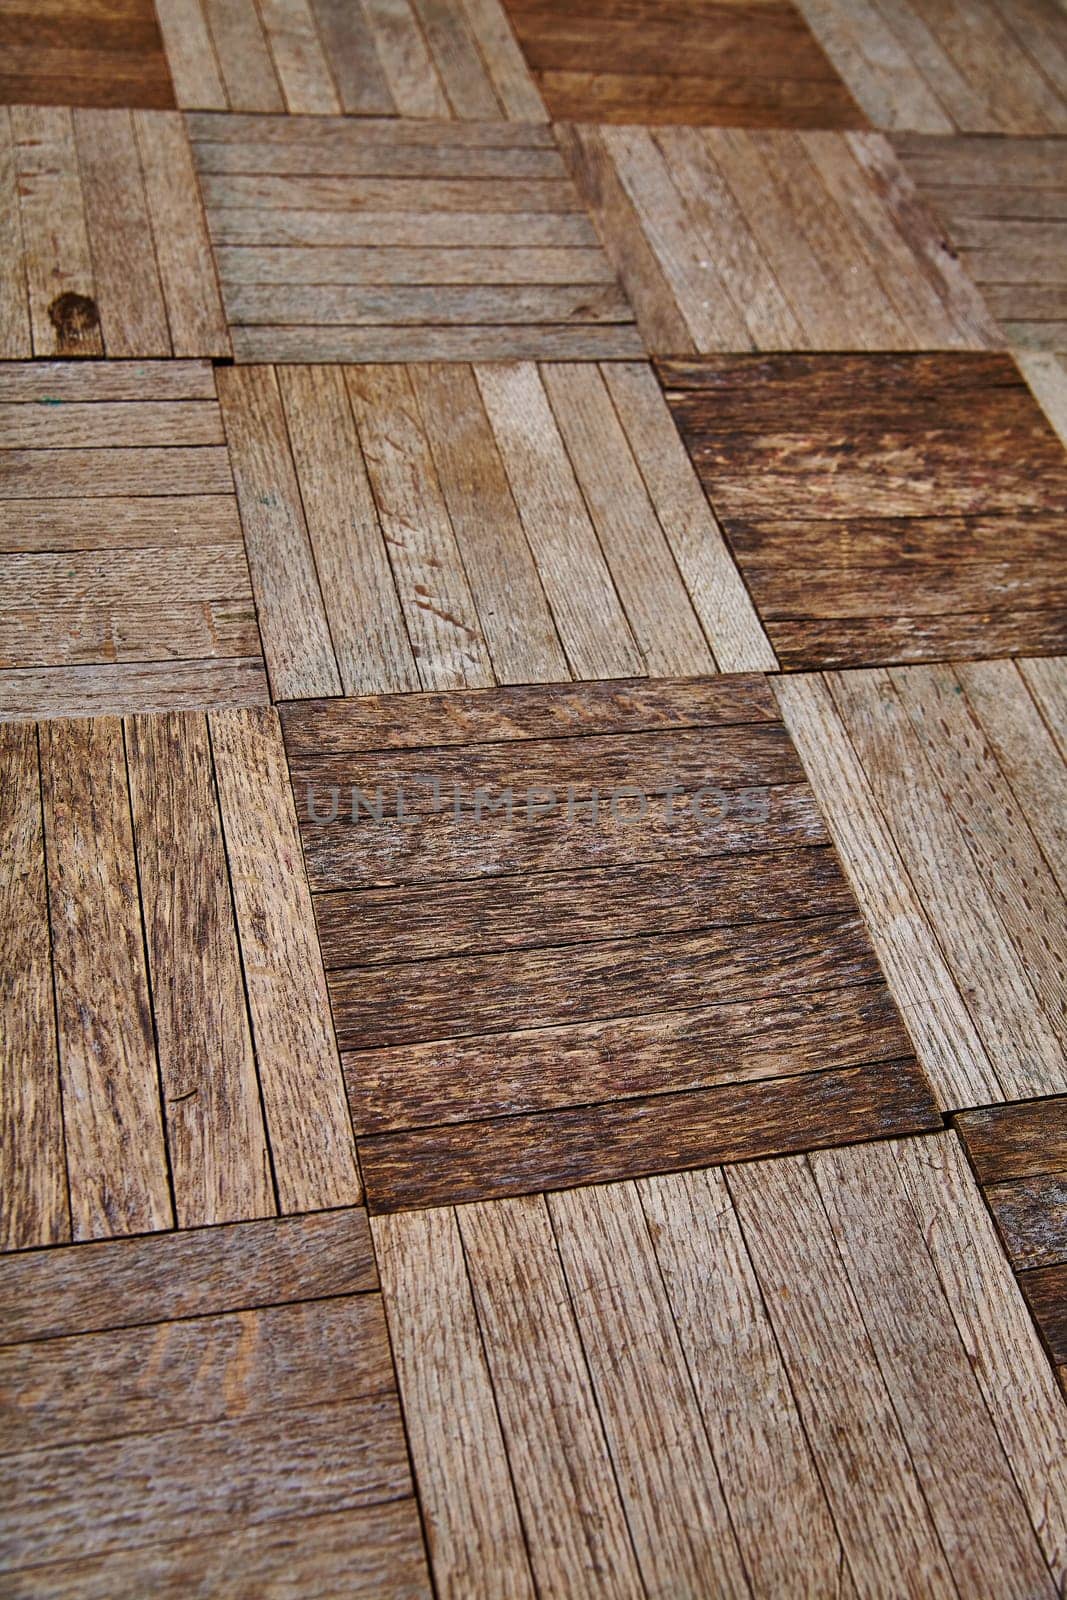 Aerial View of Rustic Interlocking Wood Floor Tiles by njproductions